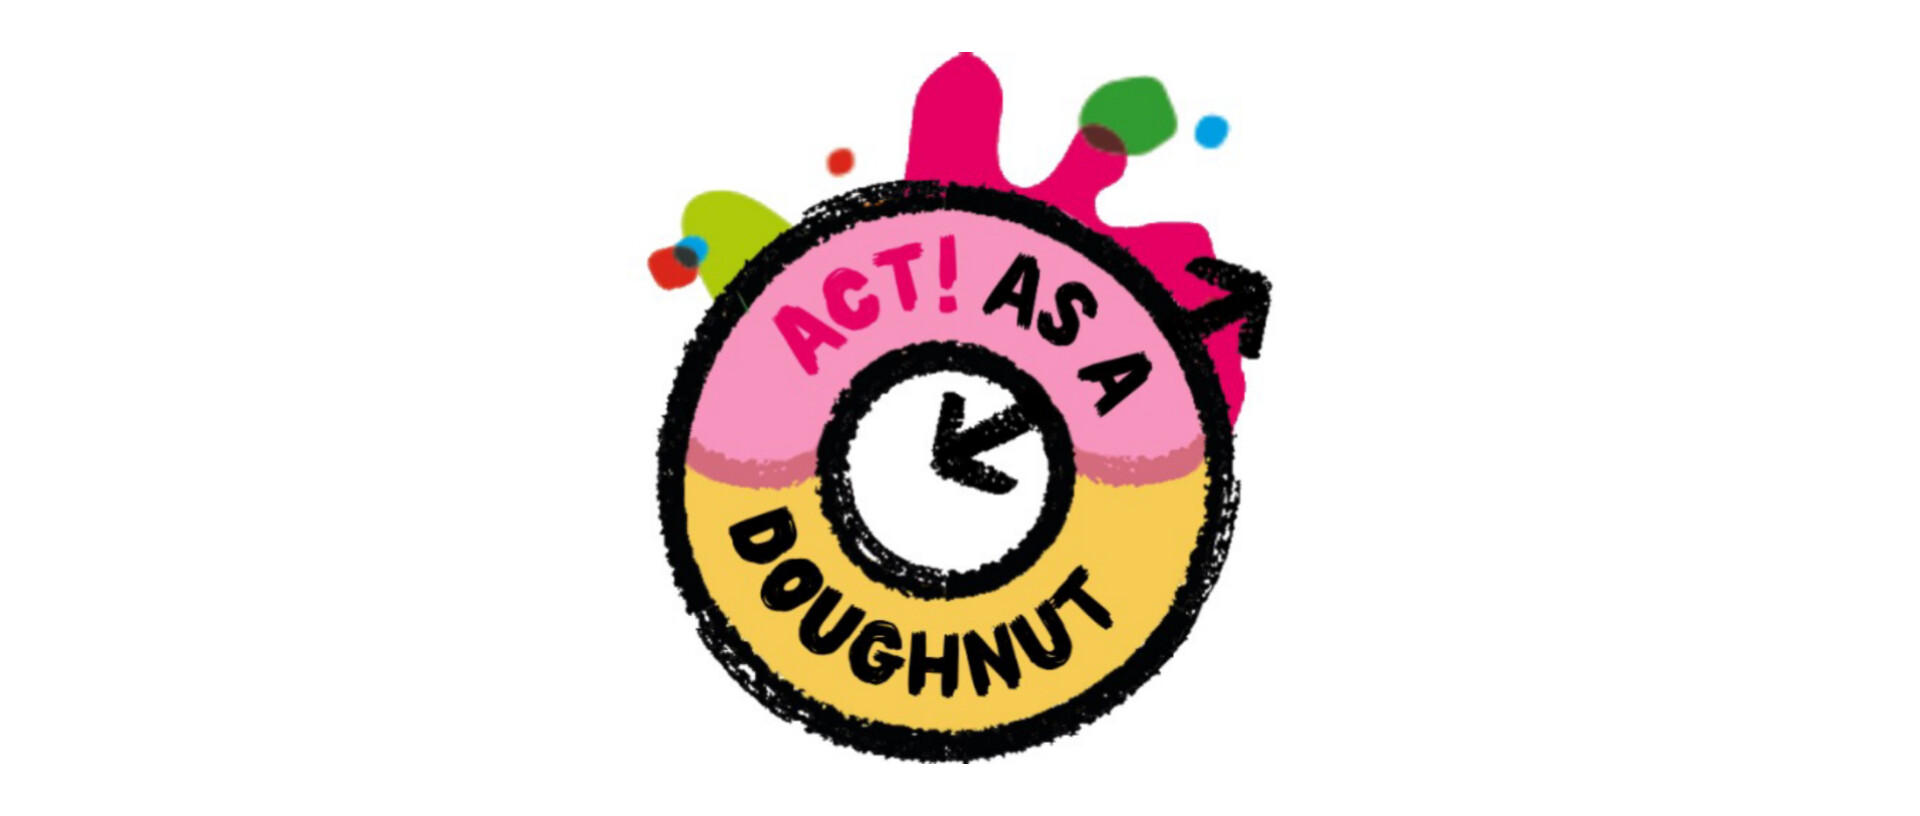 Act as a Doughnut